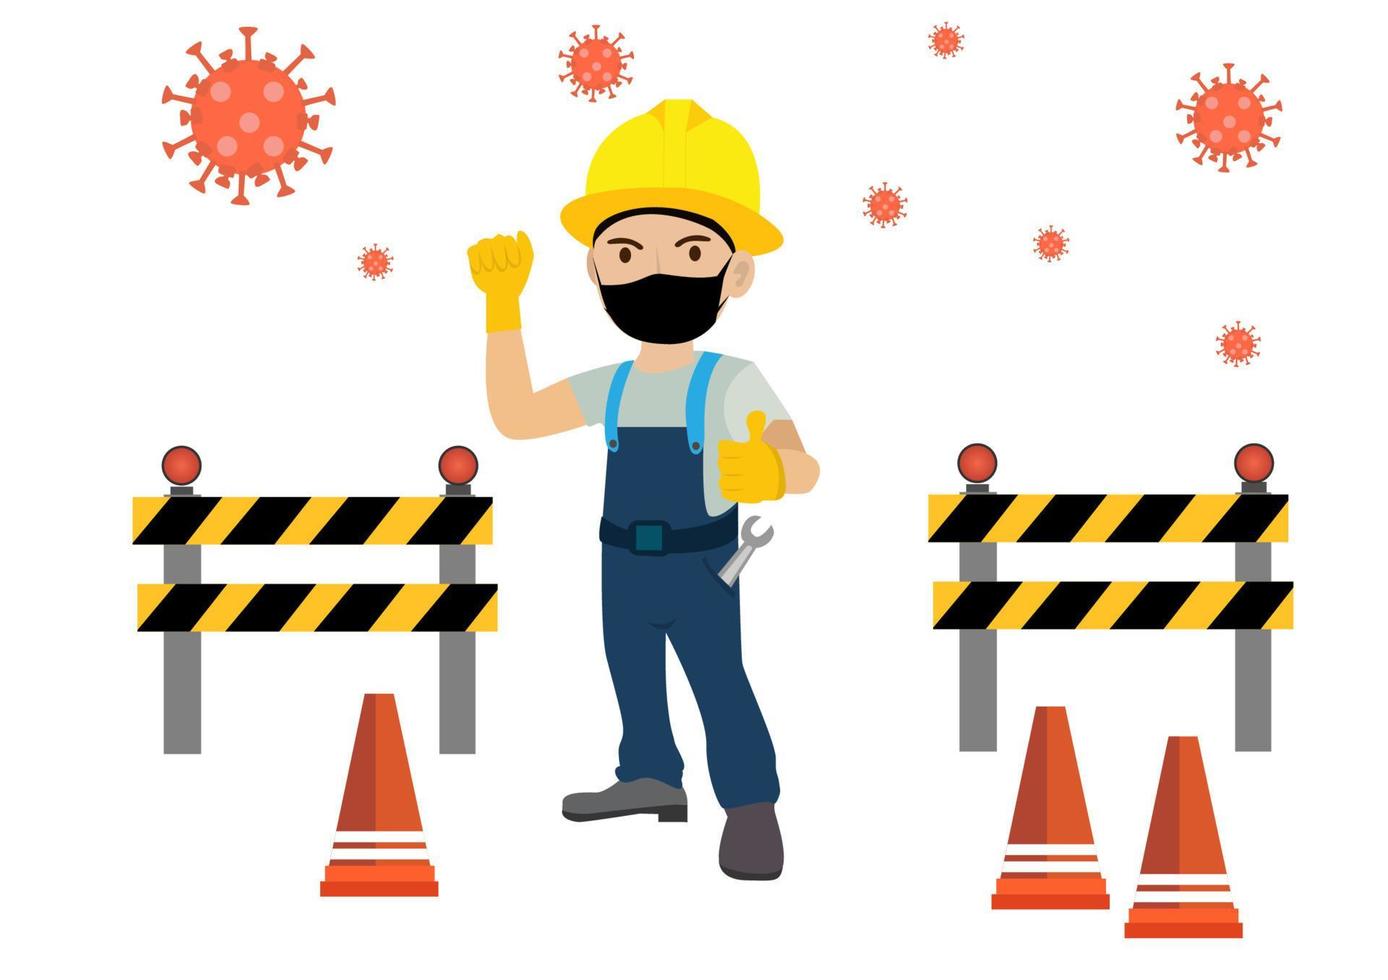 os trabalhadores da construção civil precisam impedir a propagação do coronavírus usando máscaras. em construção vetor